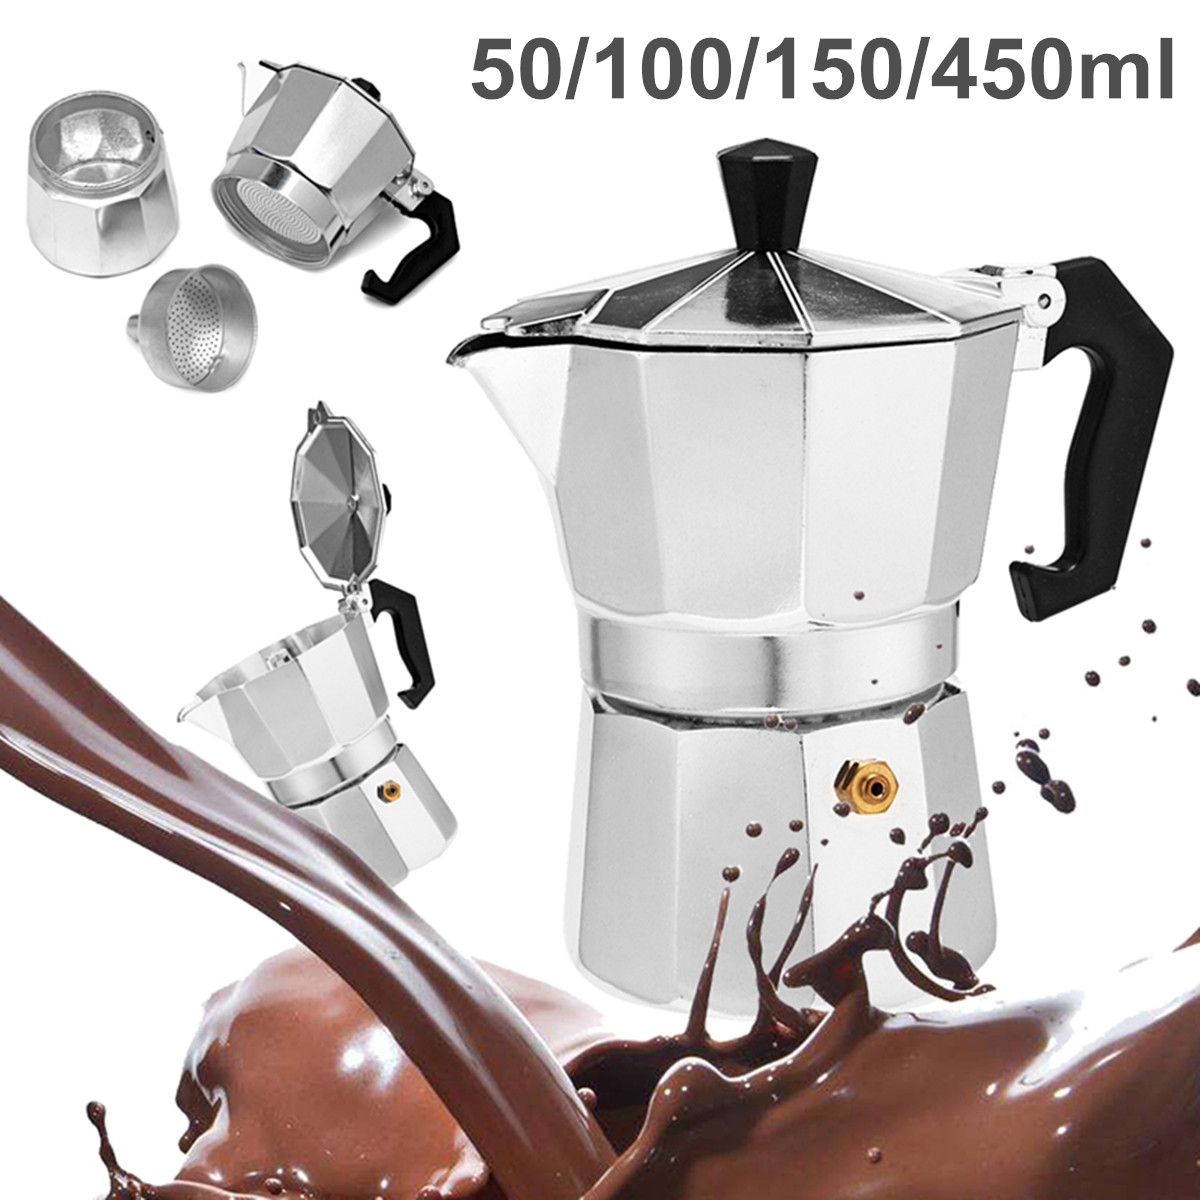 50 / 100 / 150 / 450ml Silver Aluminum Octagonal Mocha Coffee Pot Cup Percolator Maker Tea Pot 46